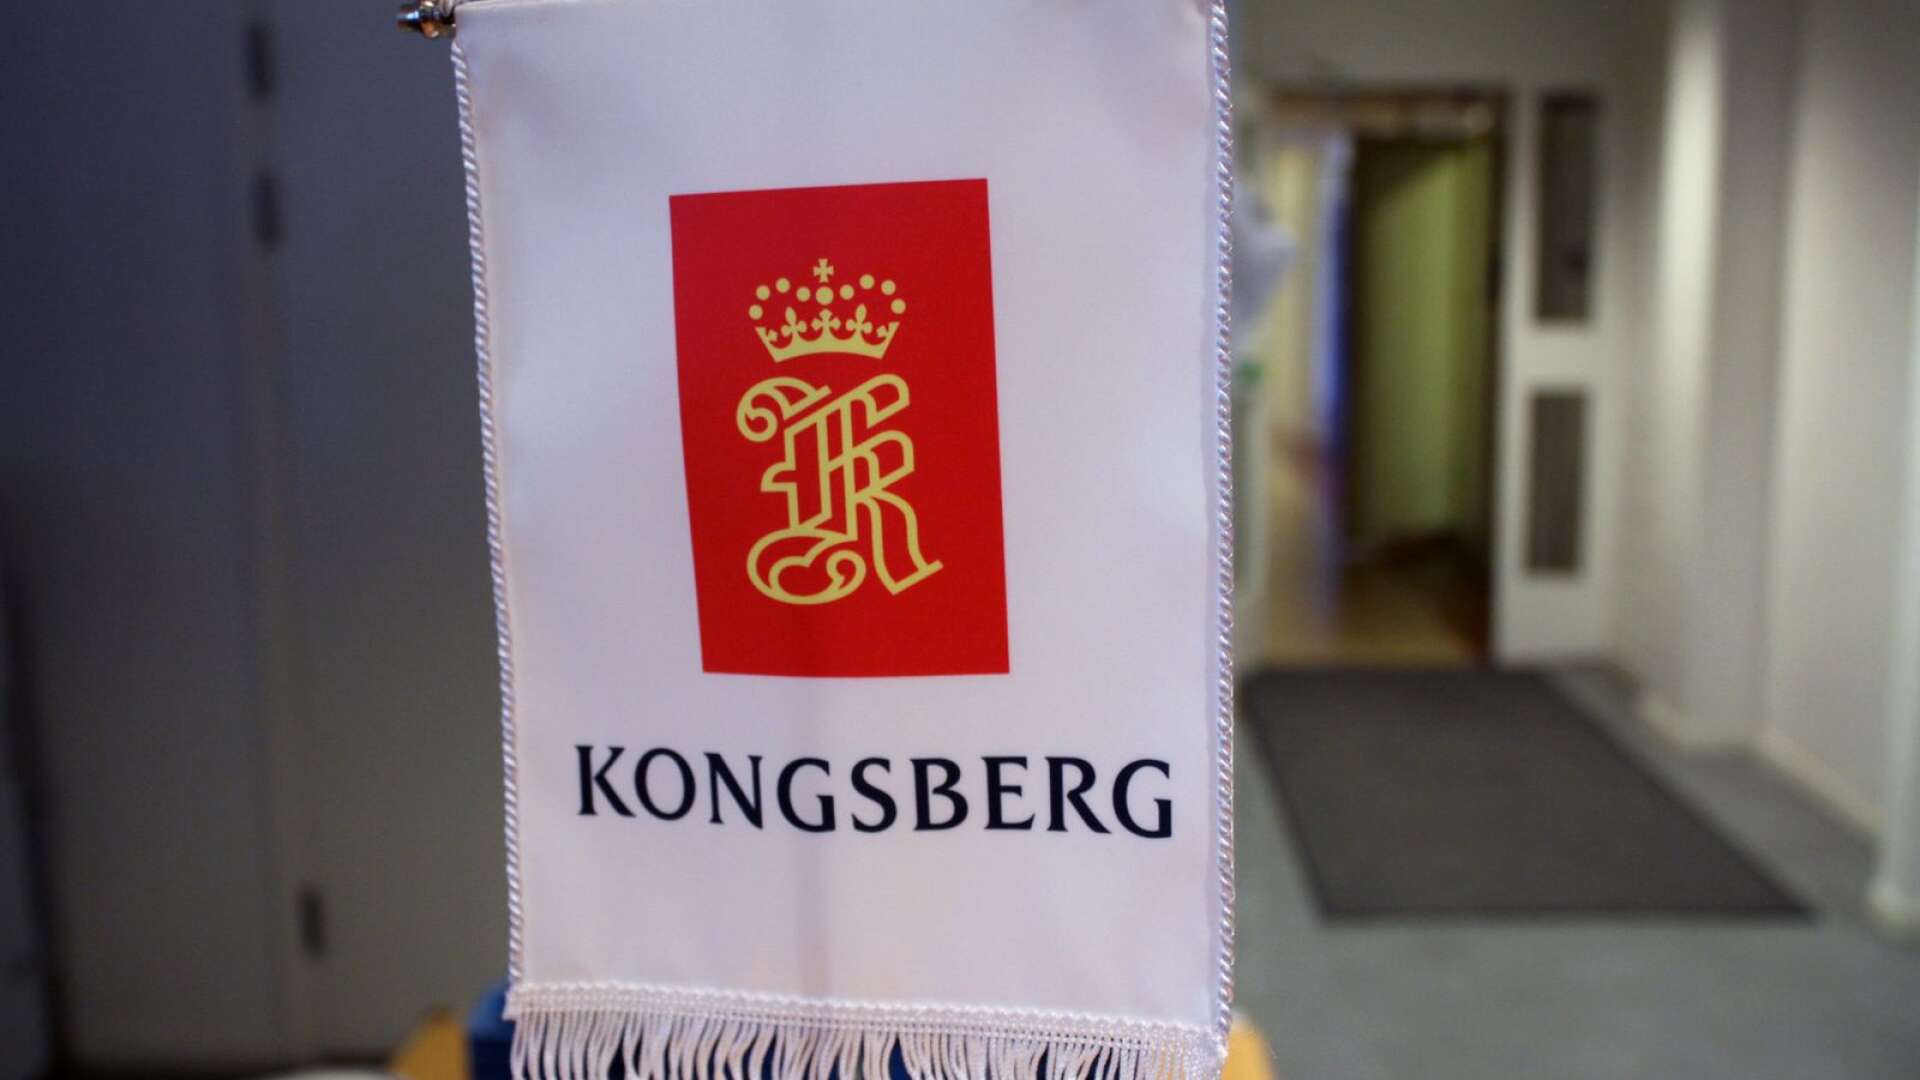 Kongsberg meddelade under fredagen att man har permitterat 400 personer i koncernen.